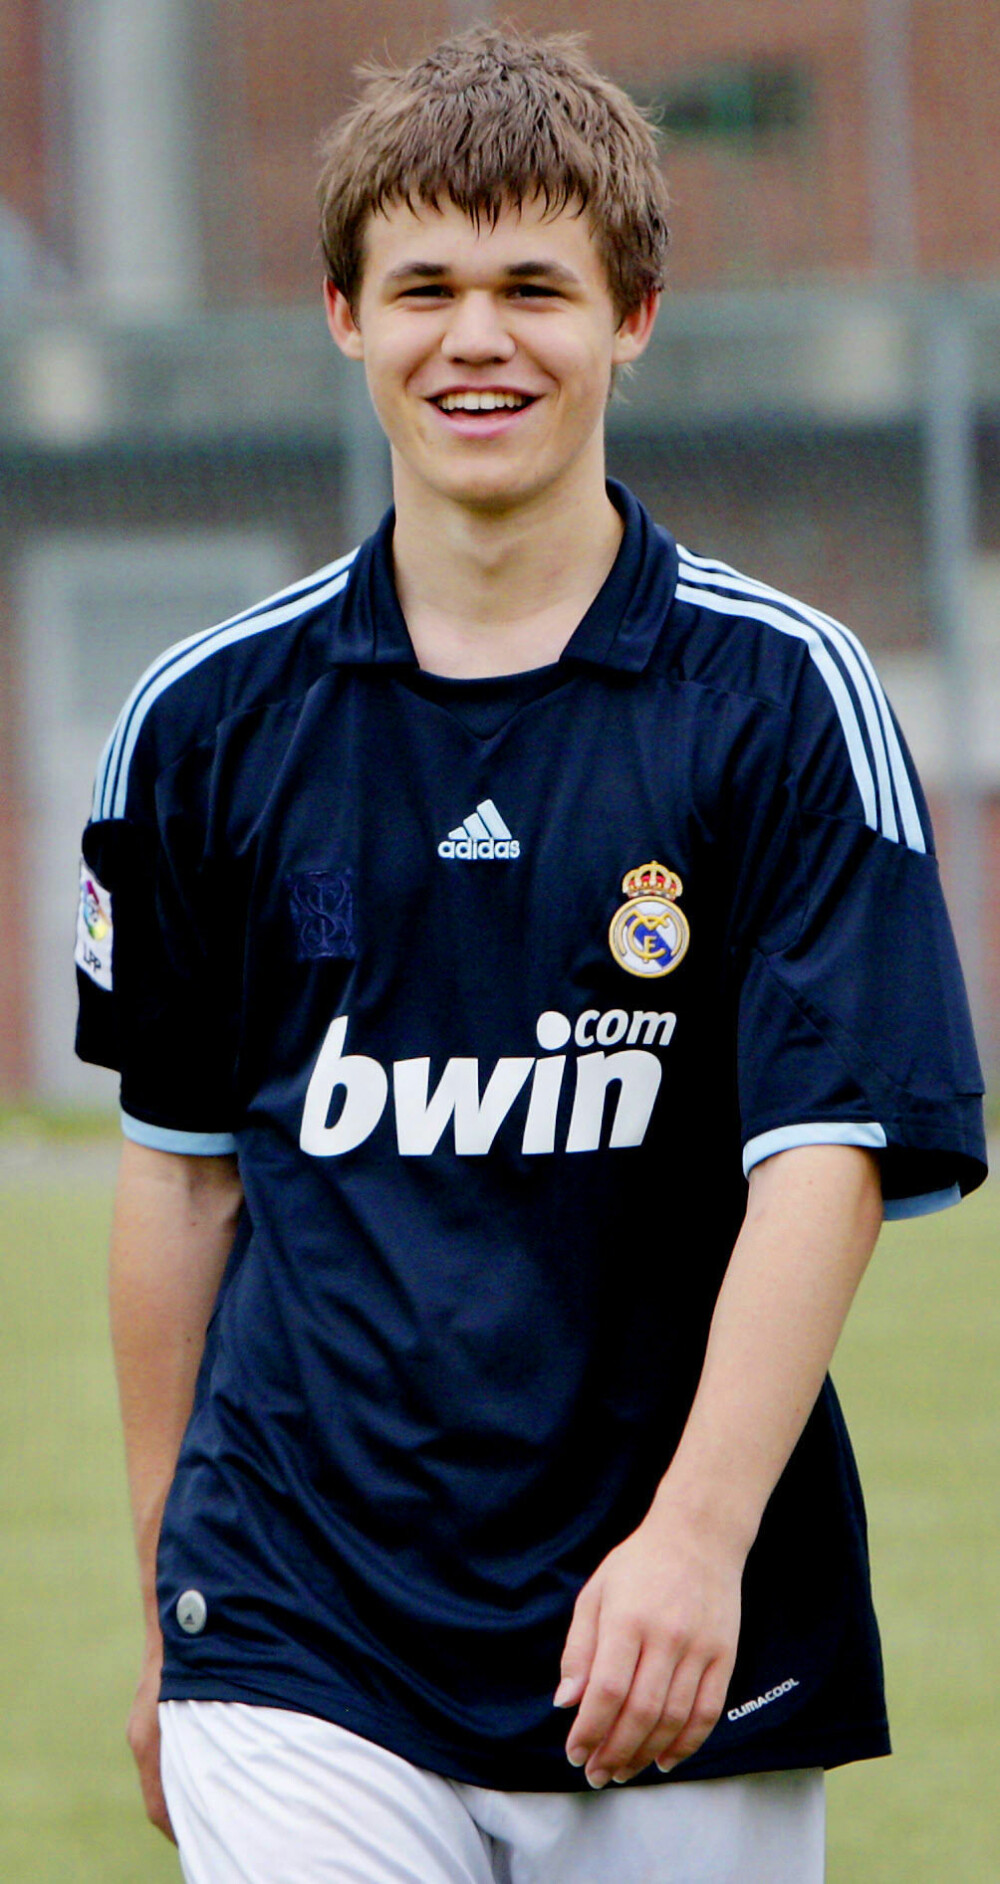 FOT­BALL­INTER­ES­SE: Al­le­re­de som 15-år­ing ble Magnus rangert som en av verdens beste sjakk­spil­le­re, men Magnus har også interesse for andre sporter, deriblant fotball. Her er Magnus 20 år gammel og ikledd en Real Madrid skjorte.